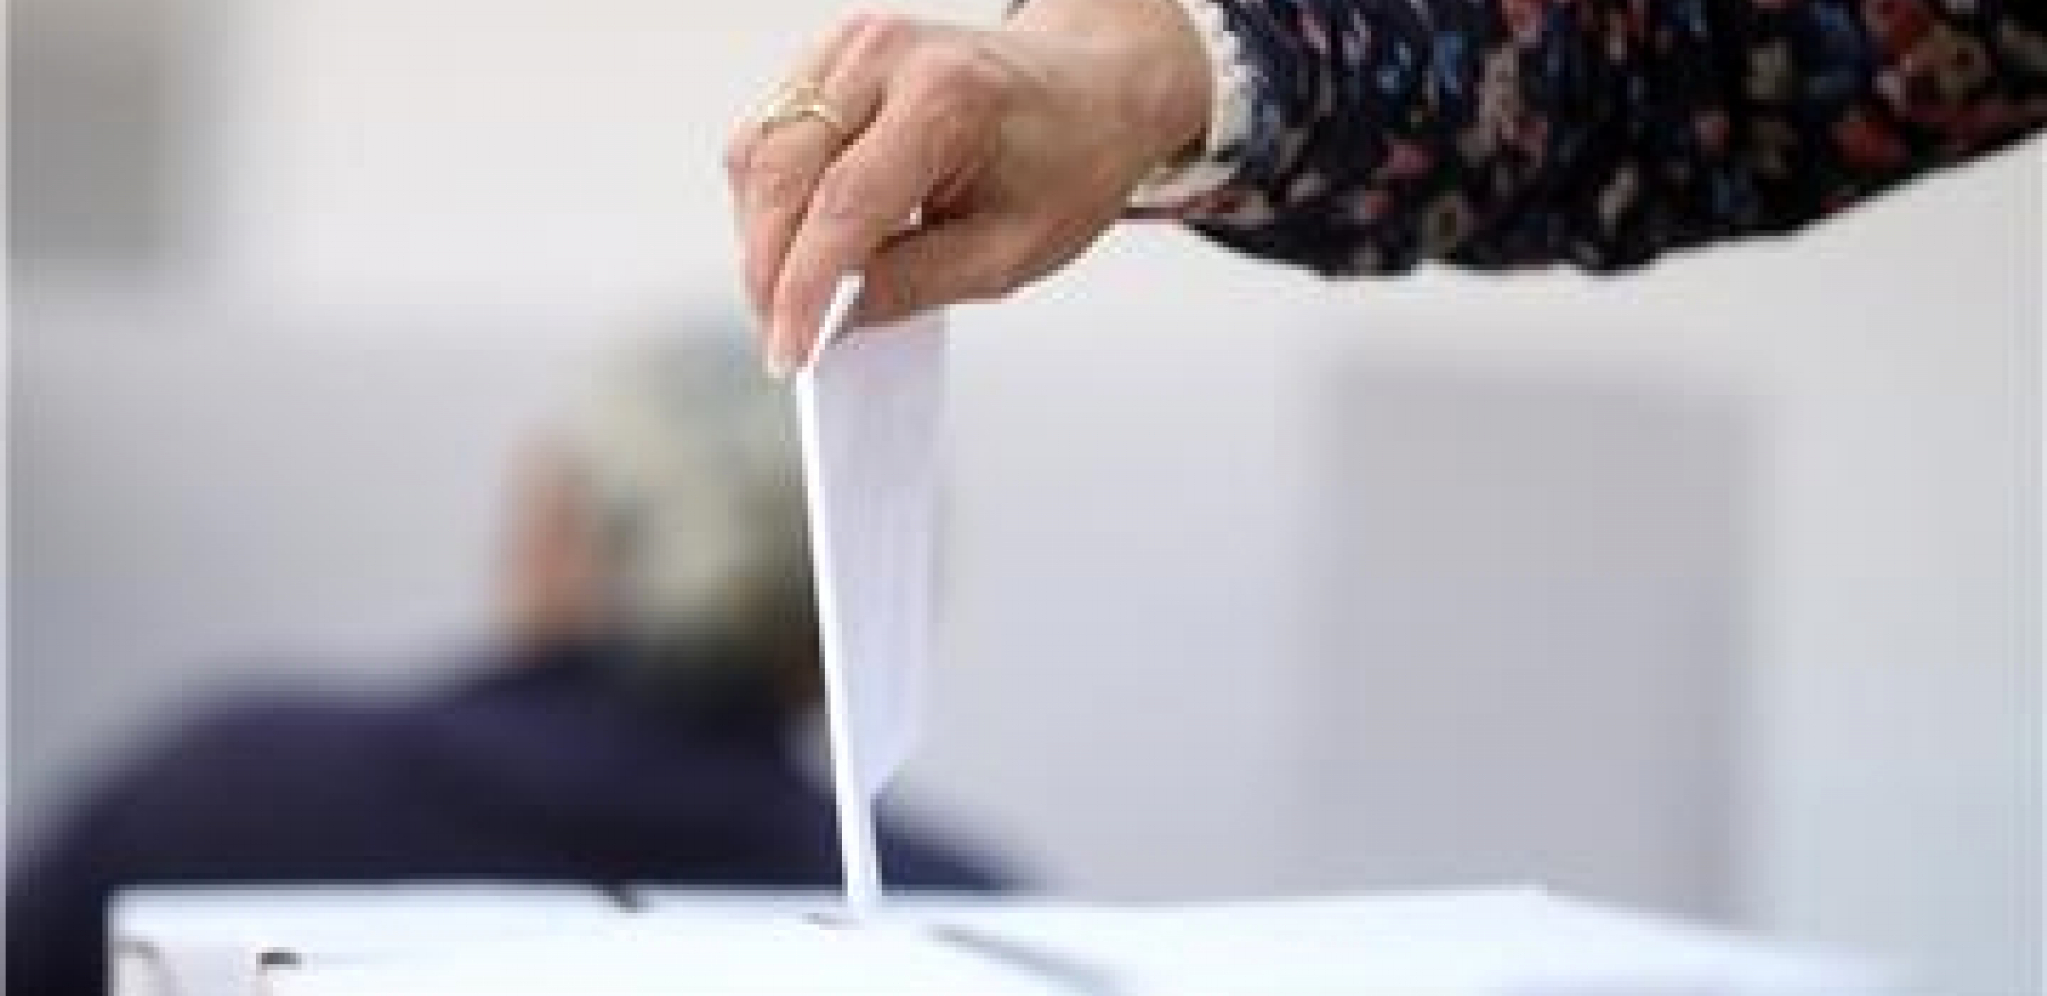 NEOBIČAN INCIDENT U BUGARSKOJ Starica pojela potvrdu o glasanju na izborima